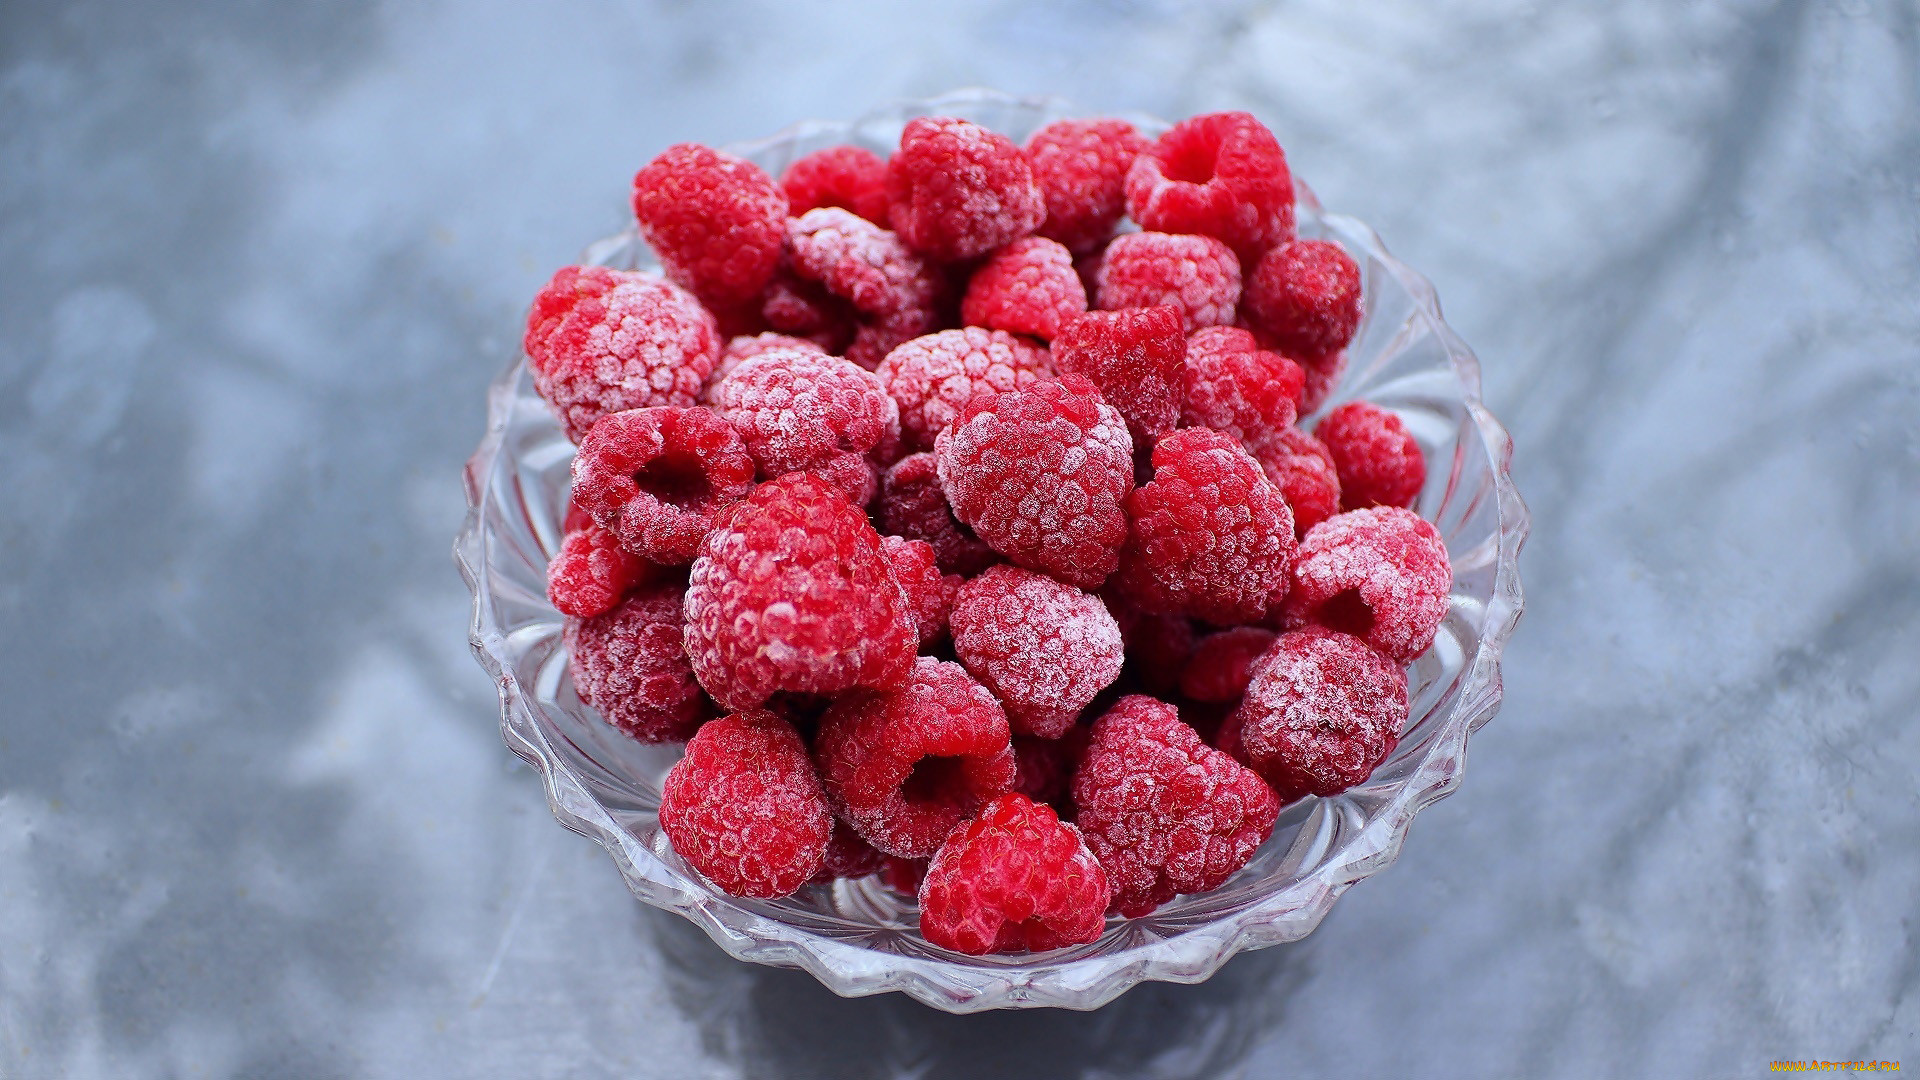 General 1920x1080 sweets food fruit berries